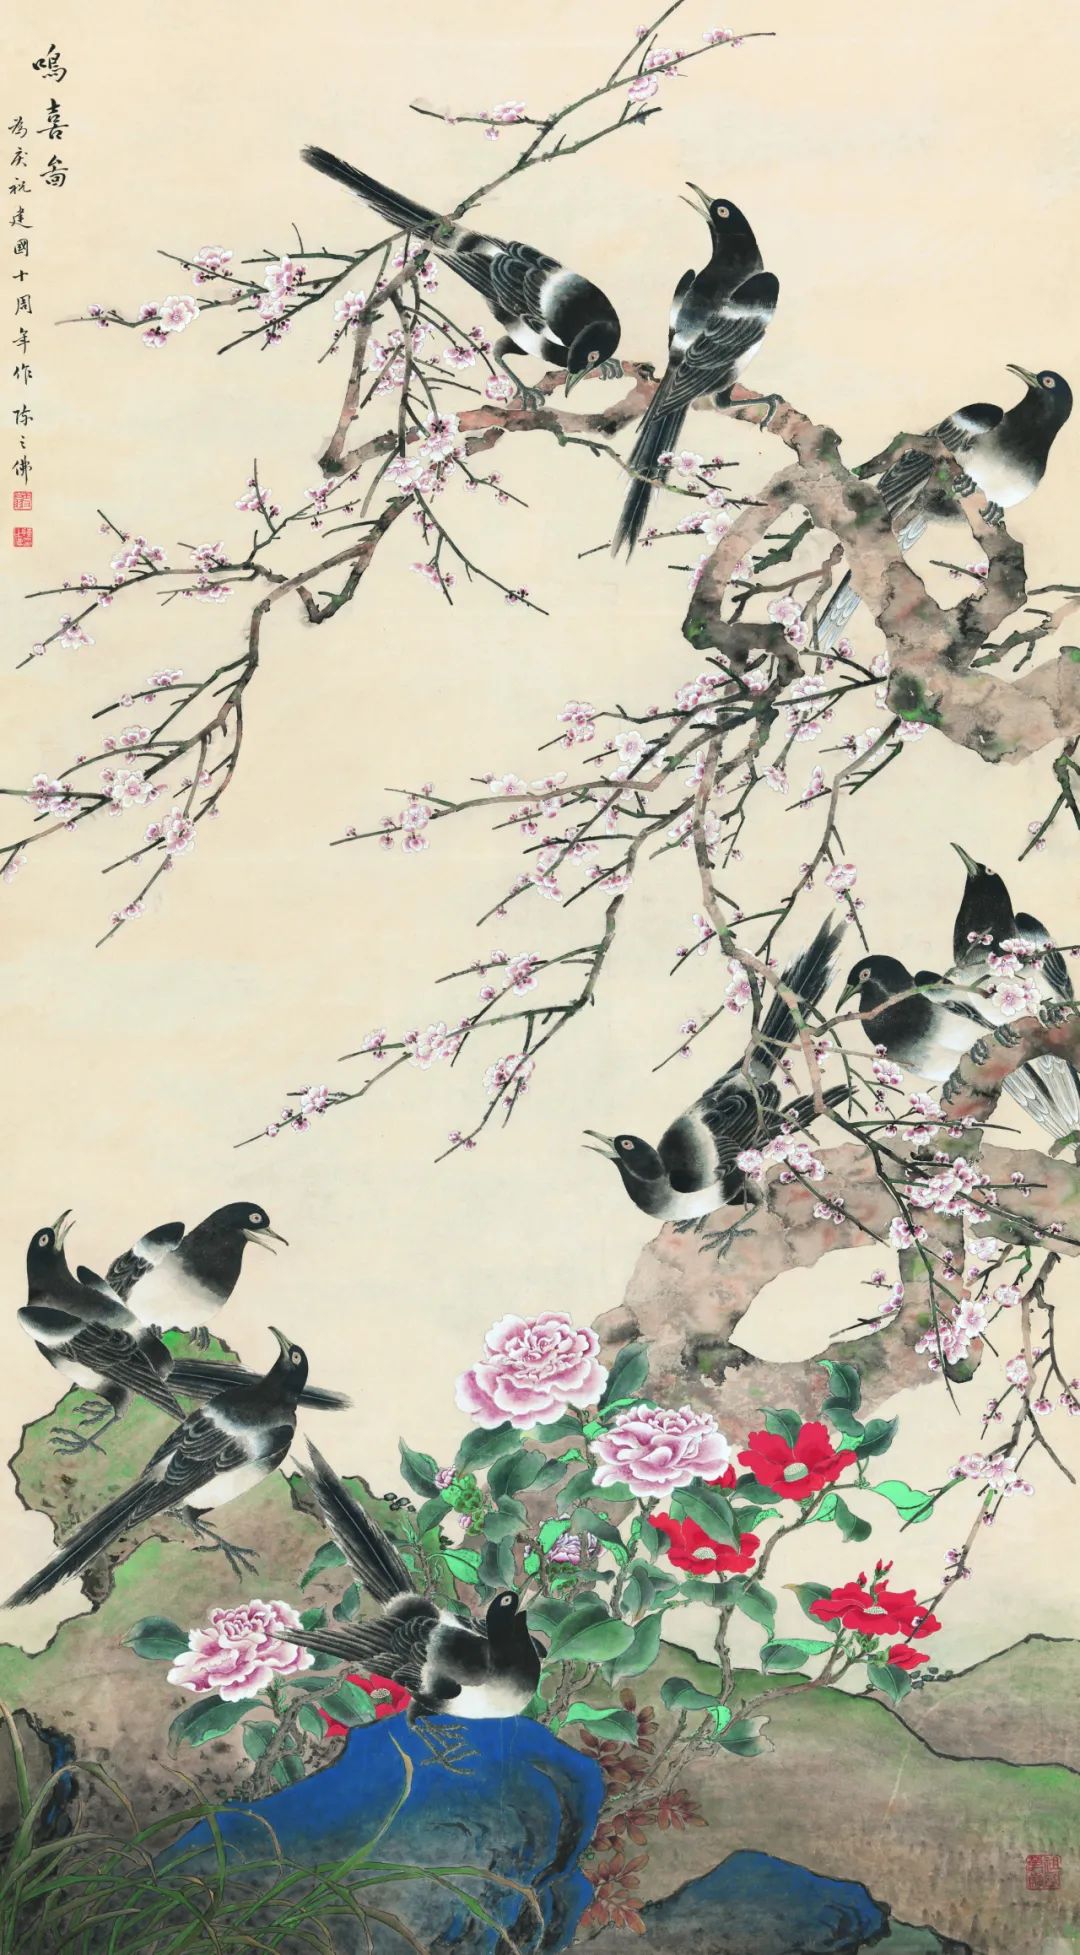 《鸣喜图》 陈之佛 中国画 167x93.6cm  1959年 中国美术馆藏